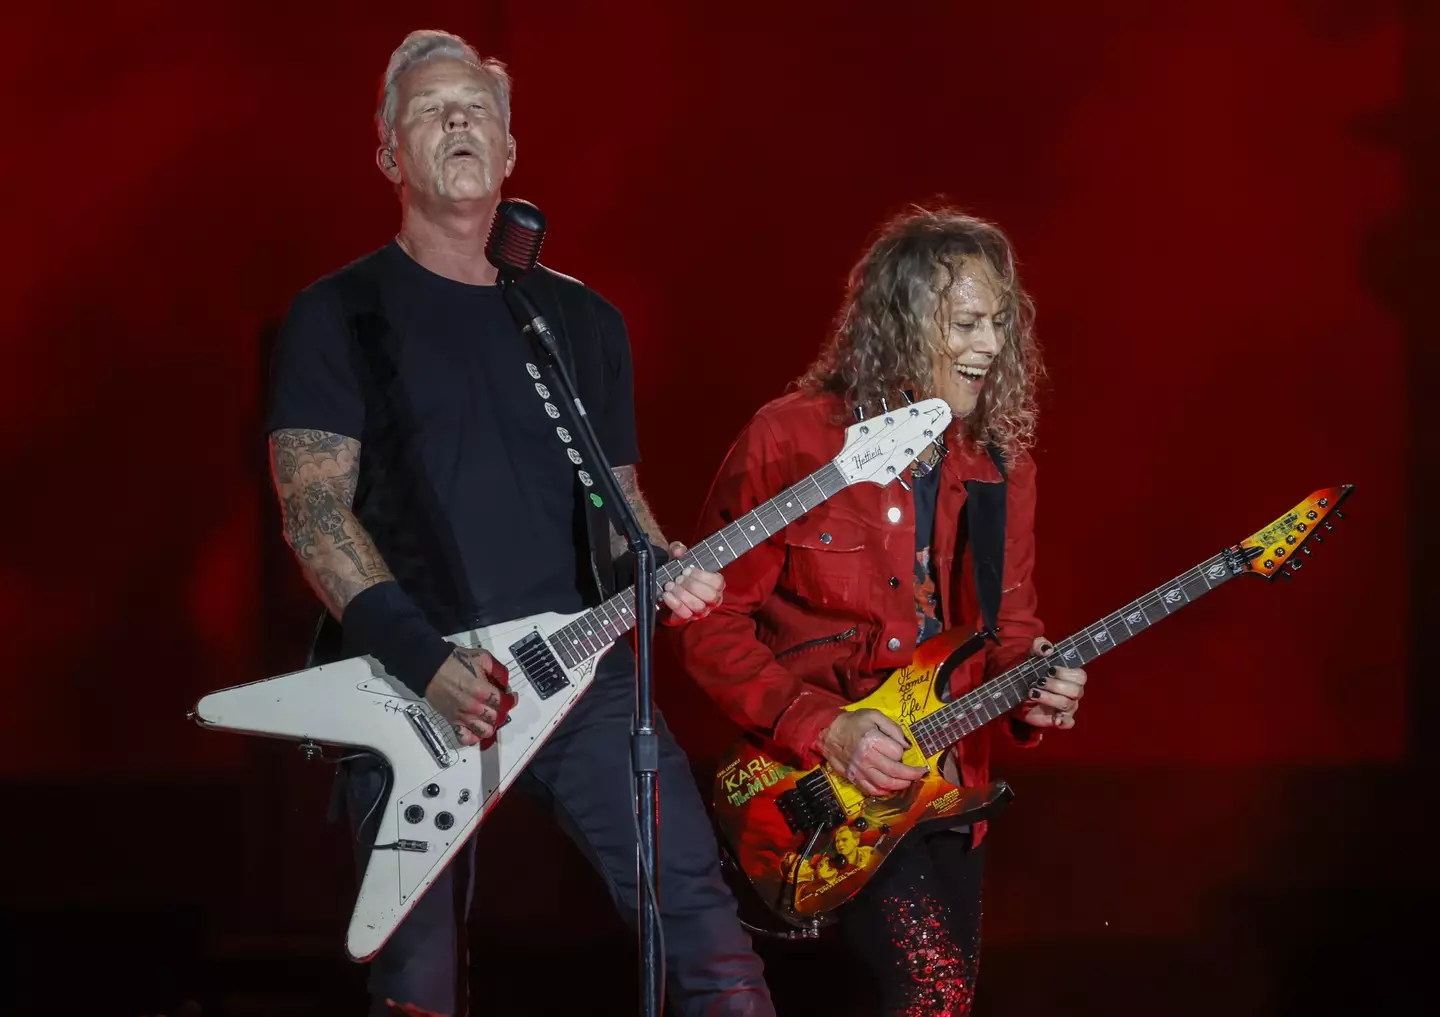 Metallica performing last weekend at the San Mames stadium, Bilbao, Spain.